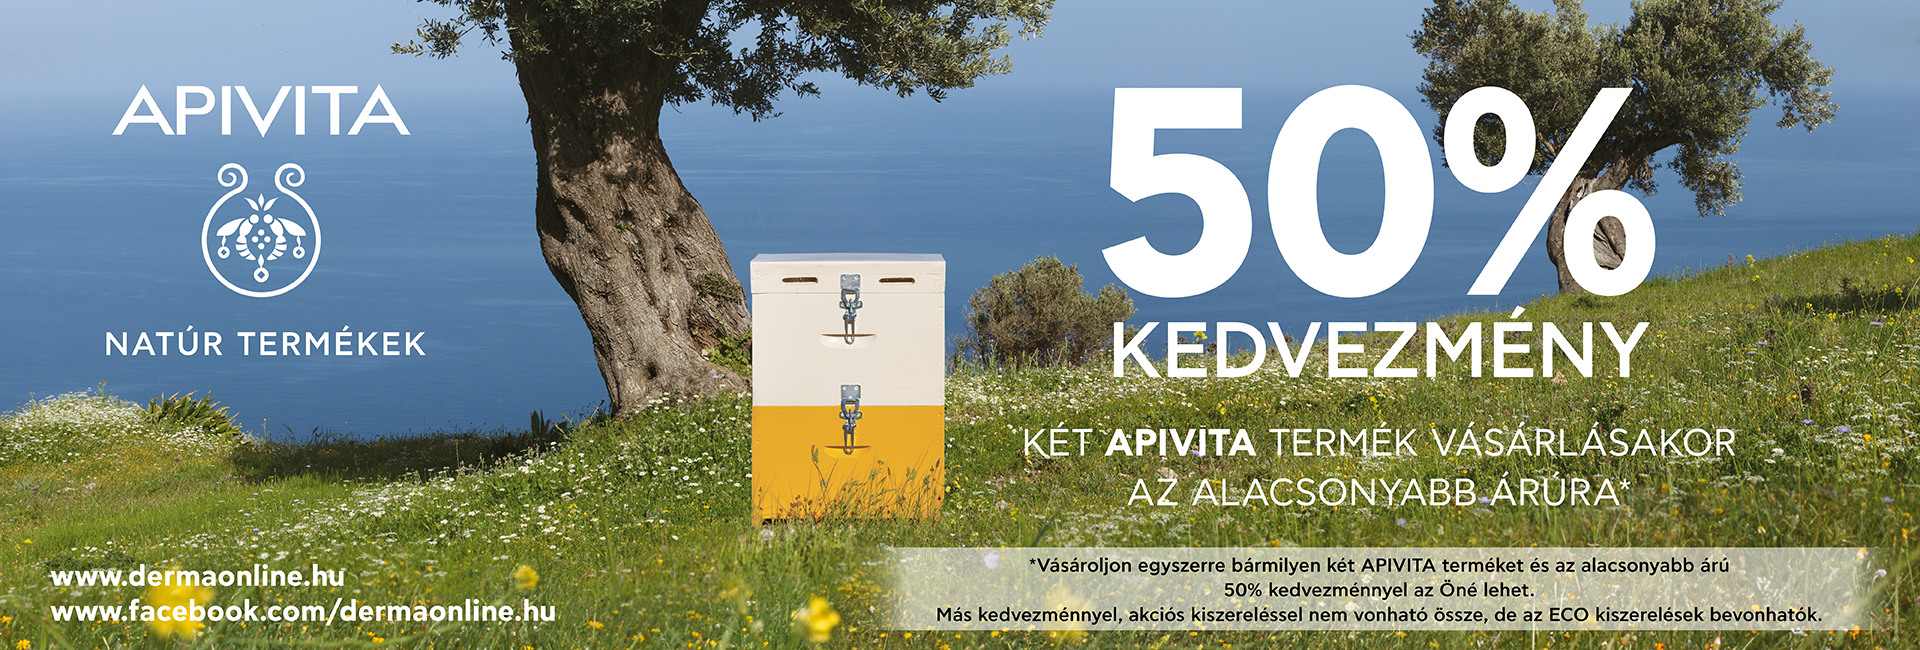 2020. május 3. és augusztus 31. között a második Apivita termékre 50% kedvezményt adunk!